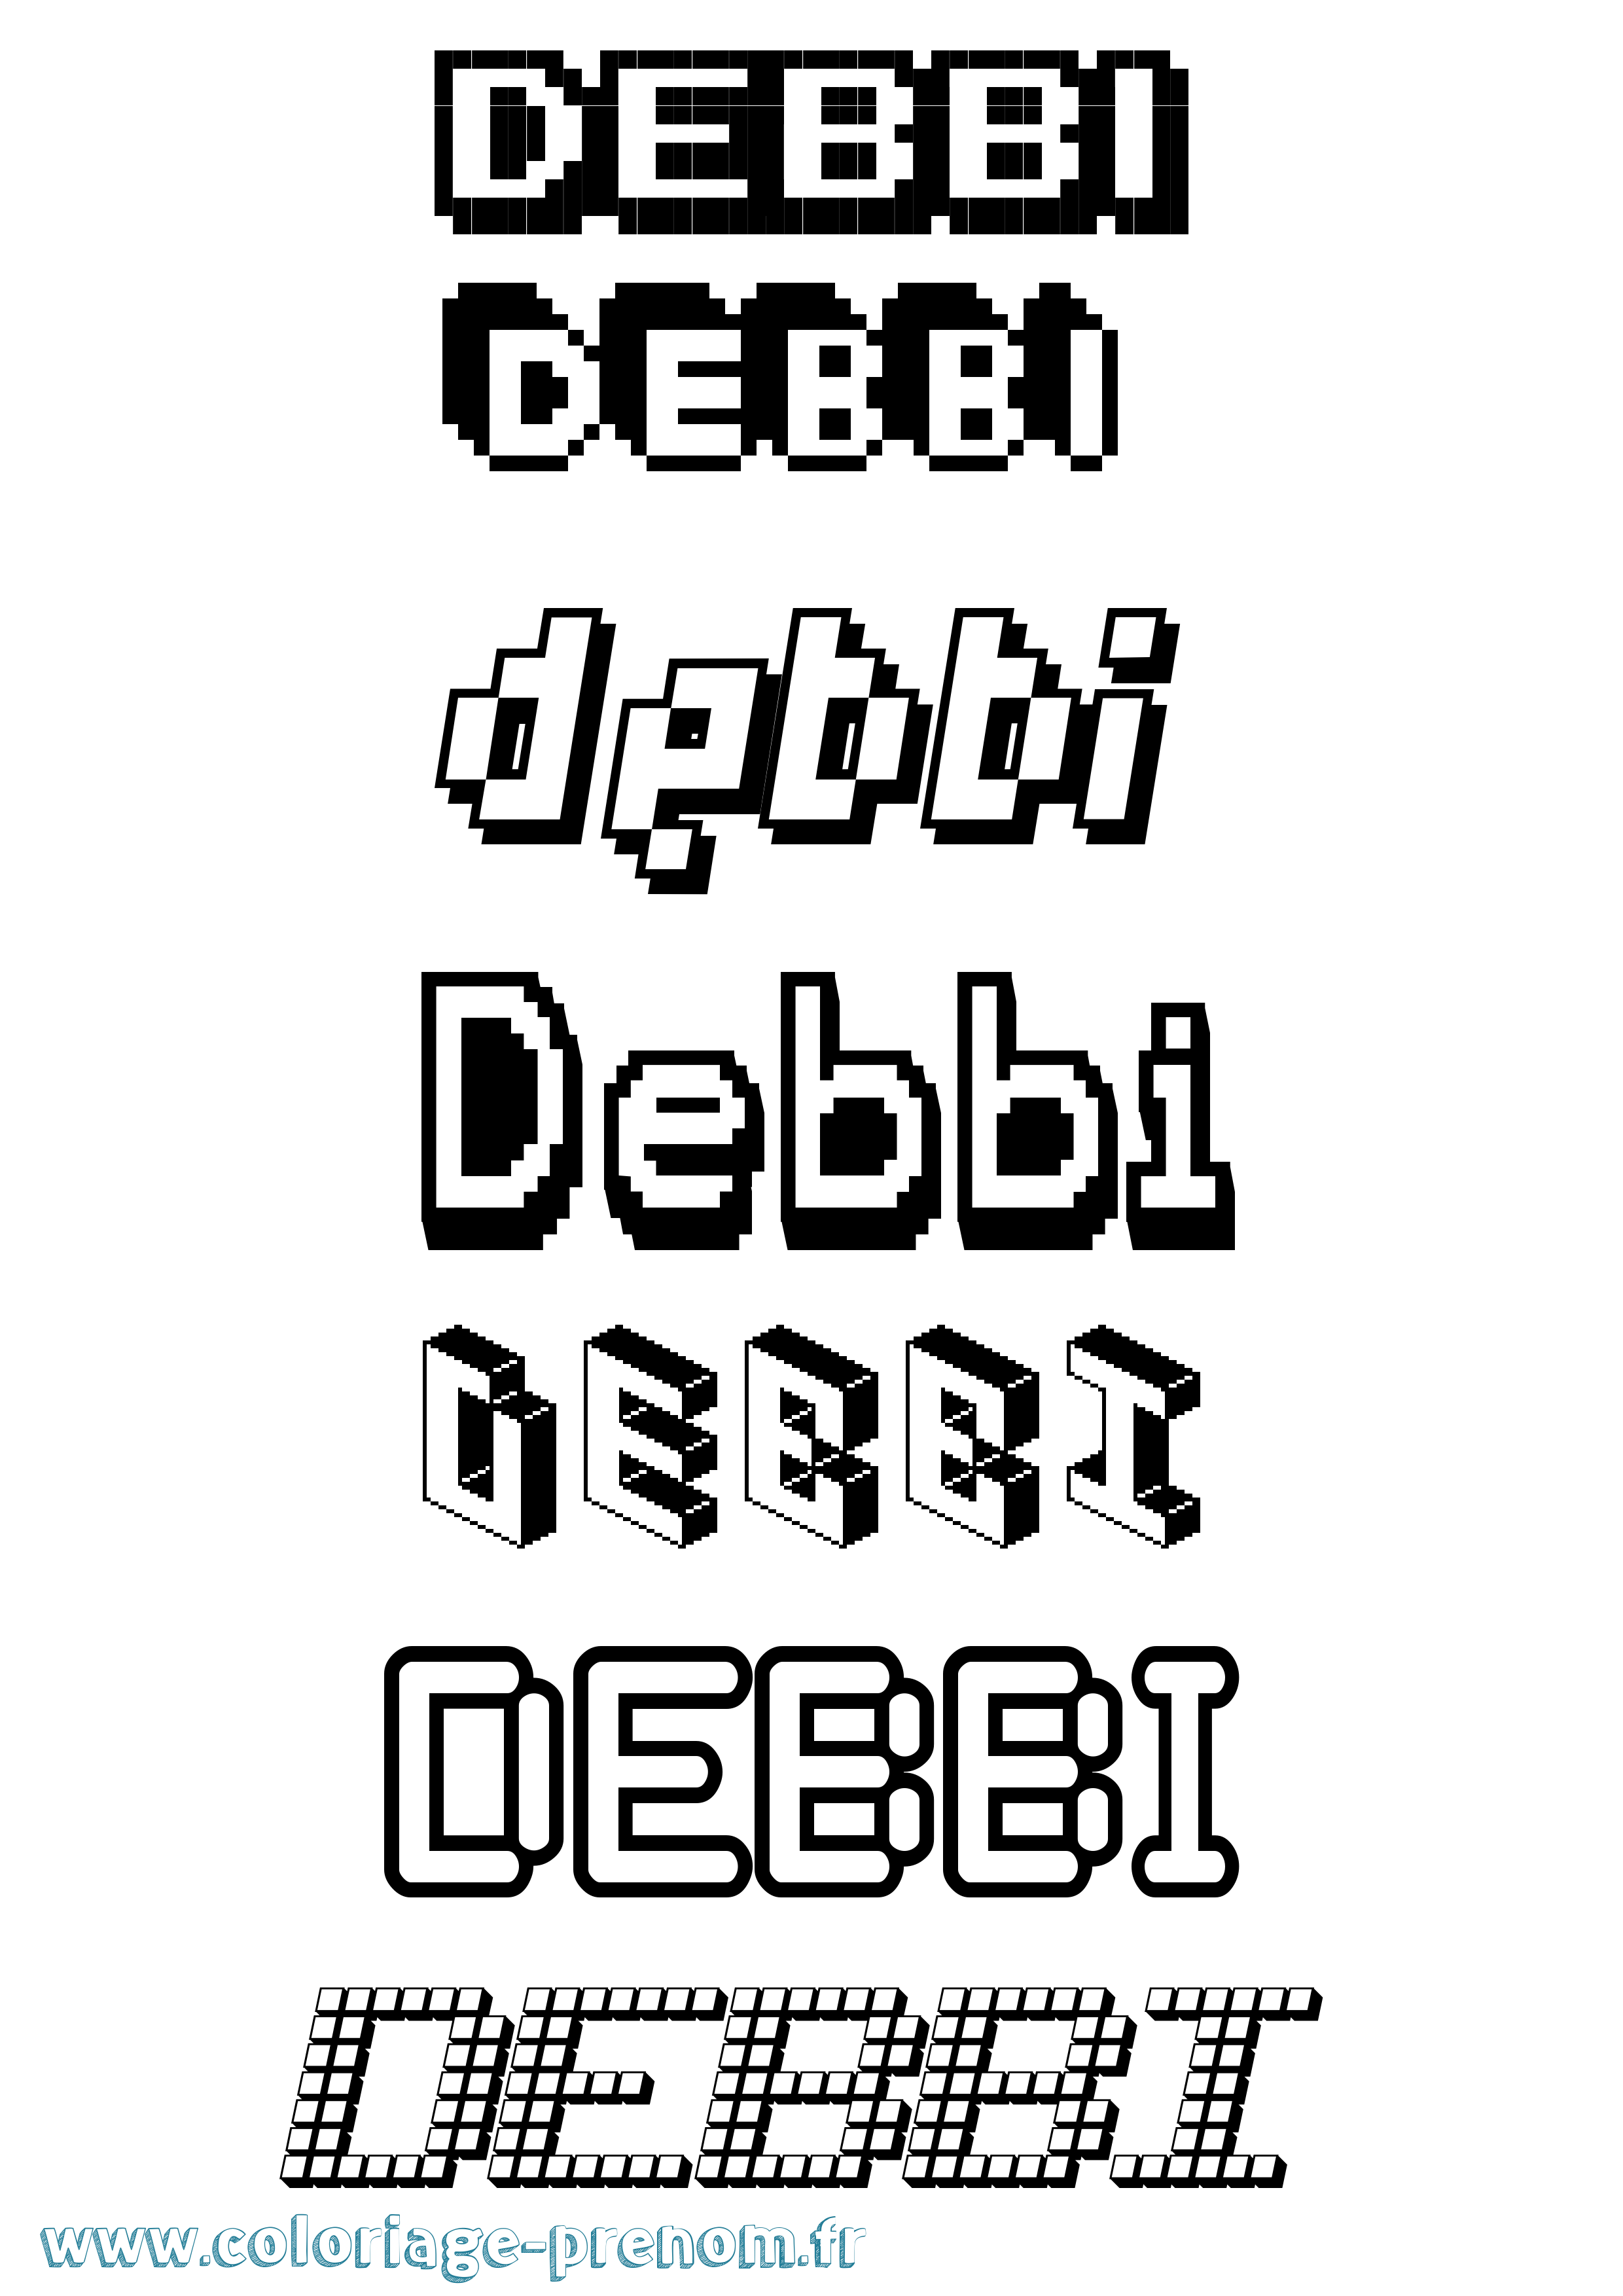 Coloriage prénom Debbi Pixel